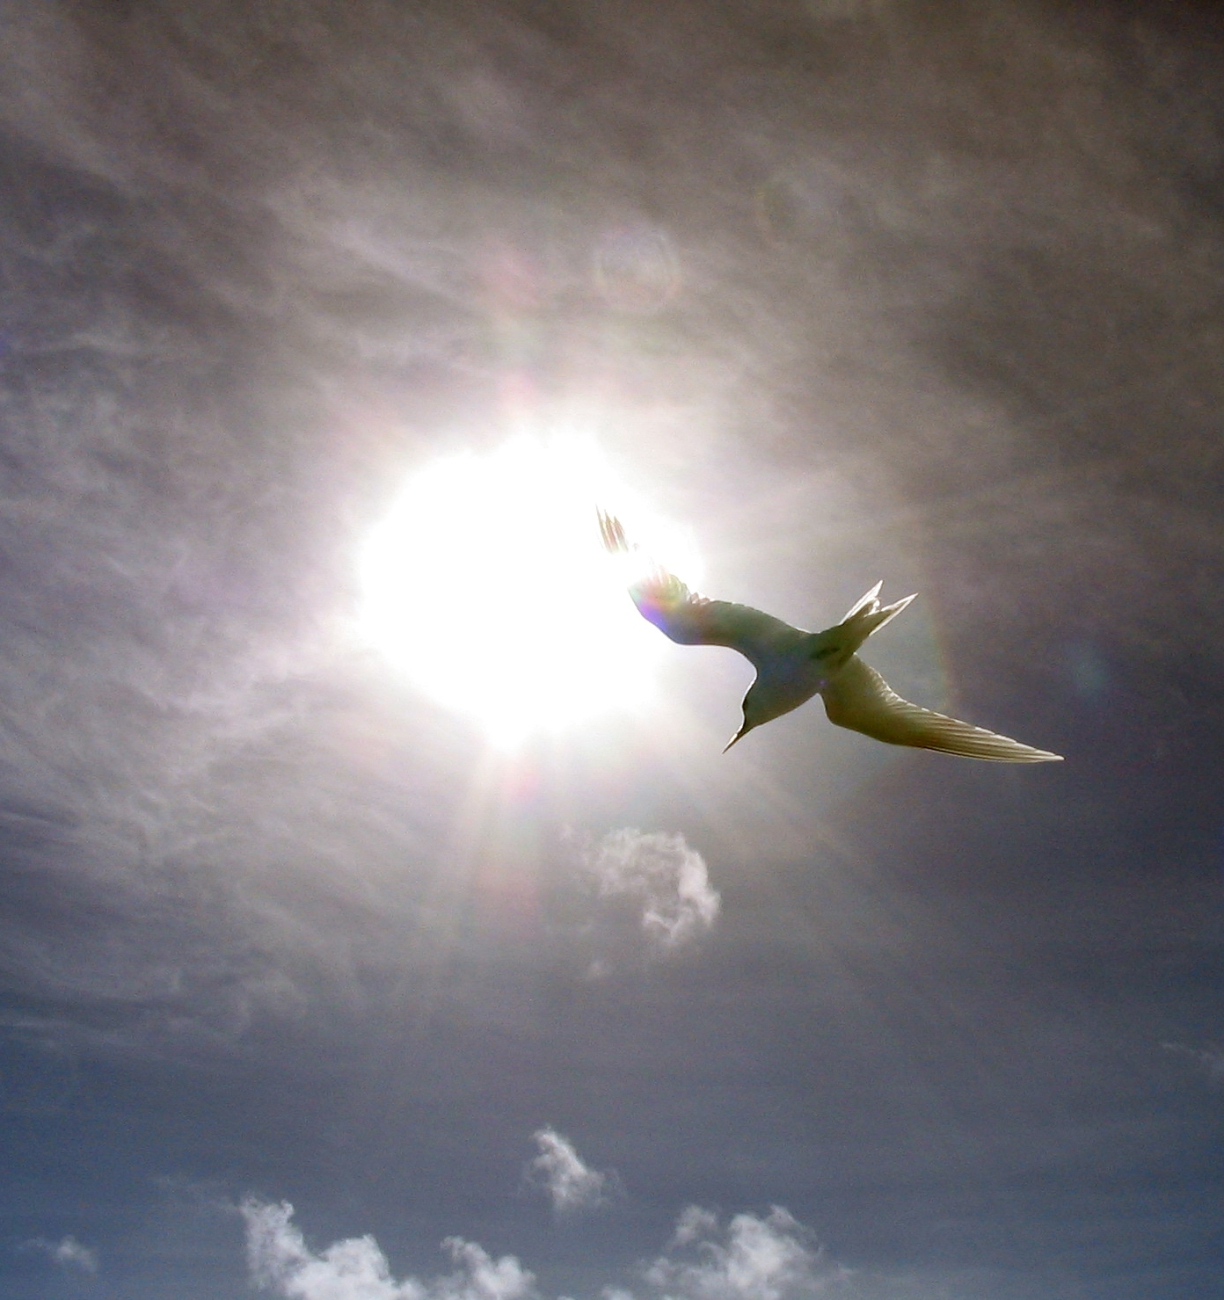 Fairy tern (Gygis alba) framed in the sun